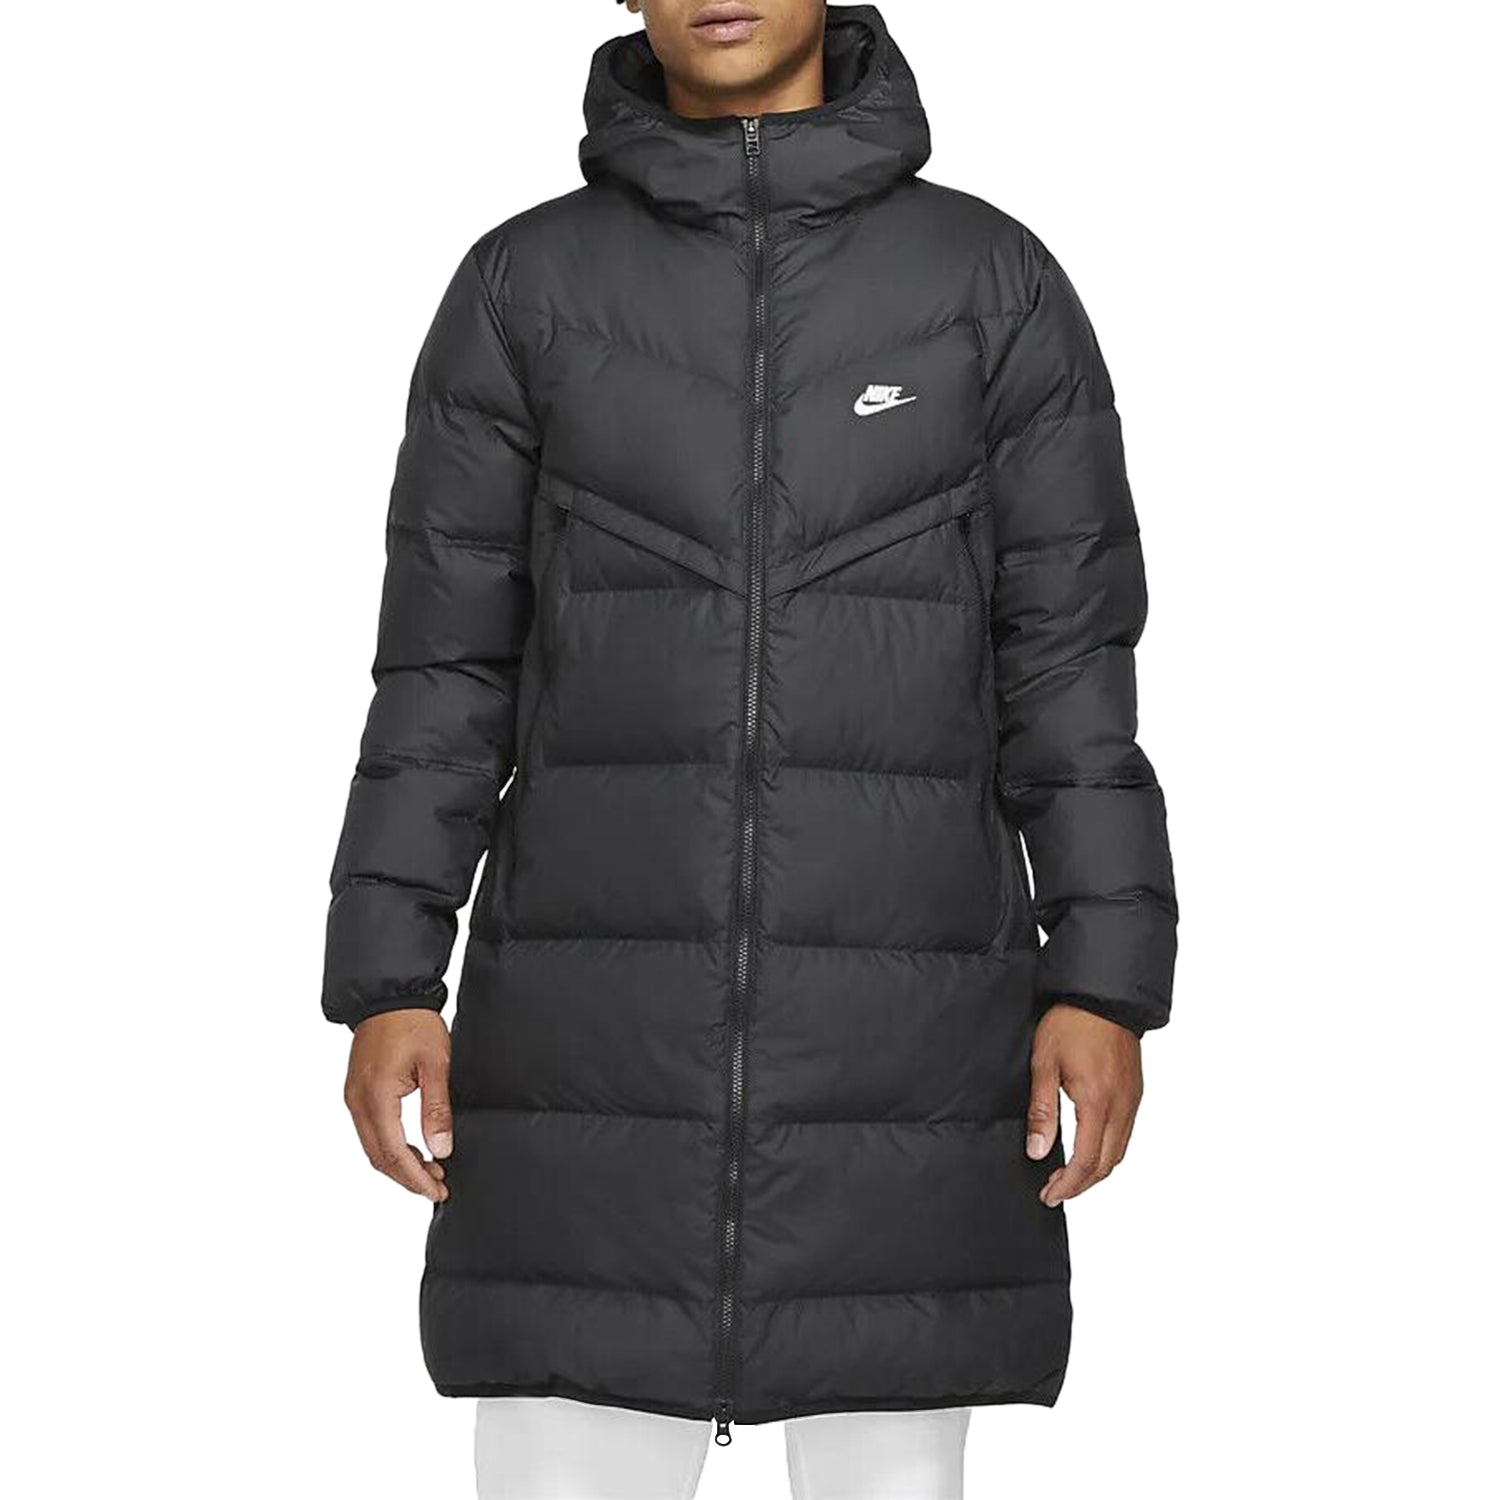 Nike Sportswear Storm Fit Windrunner Parka Jacket Mens Style : Dd6788